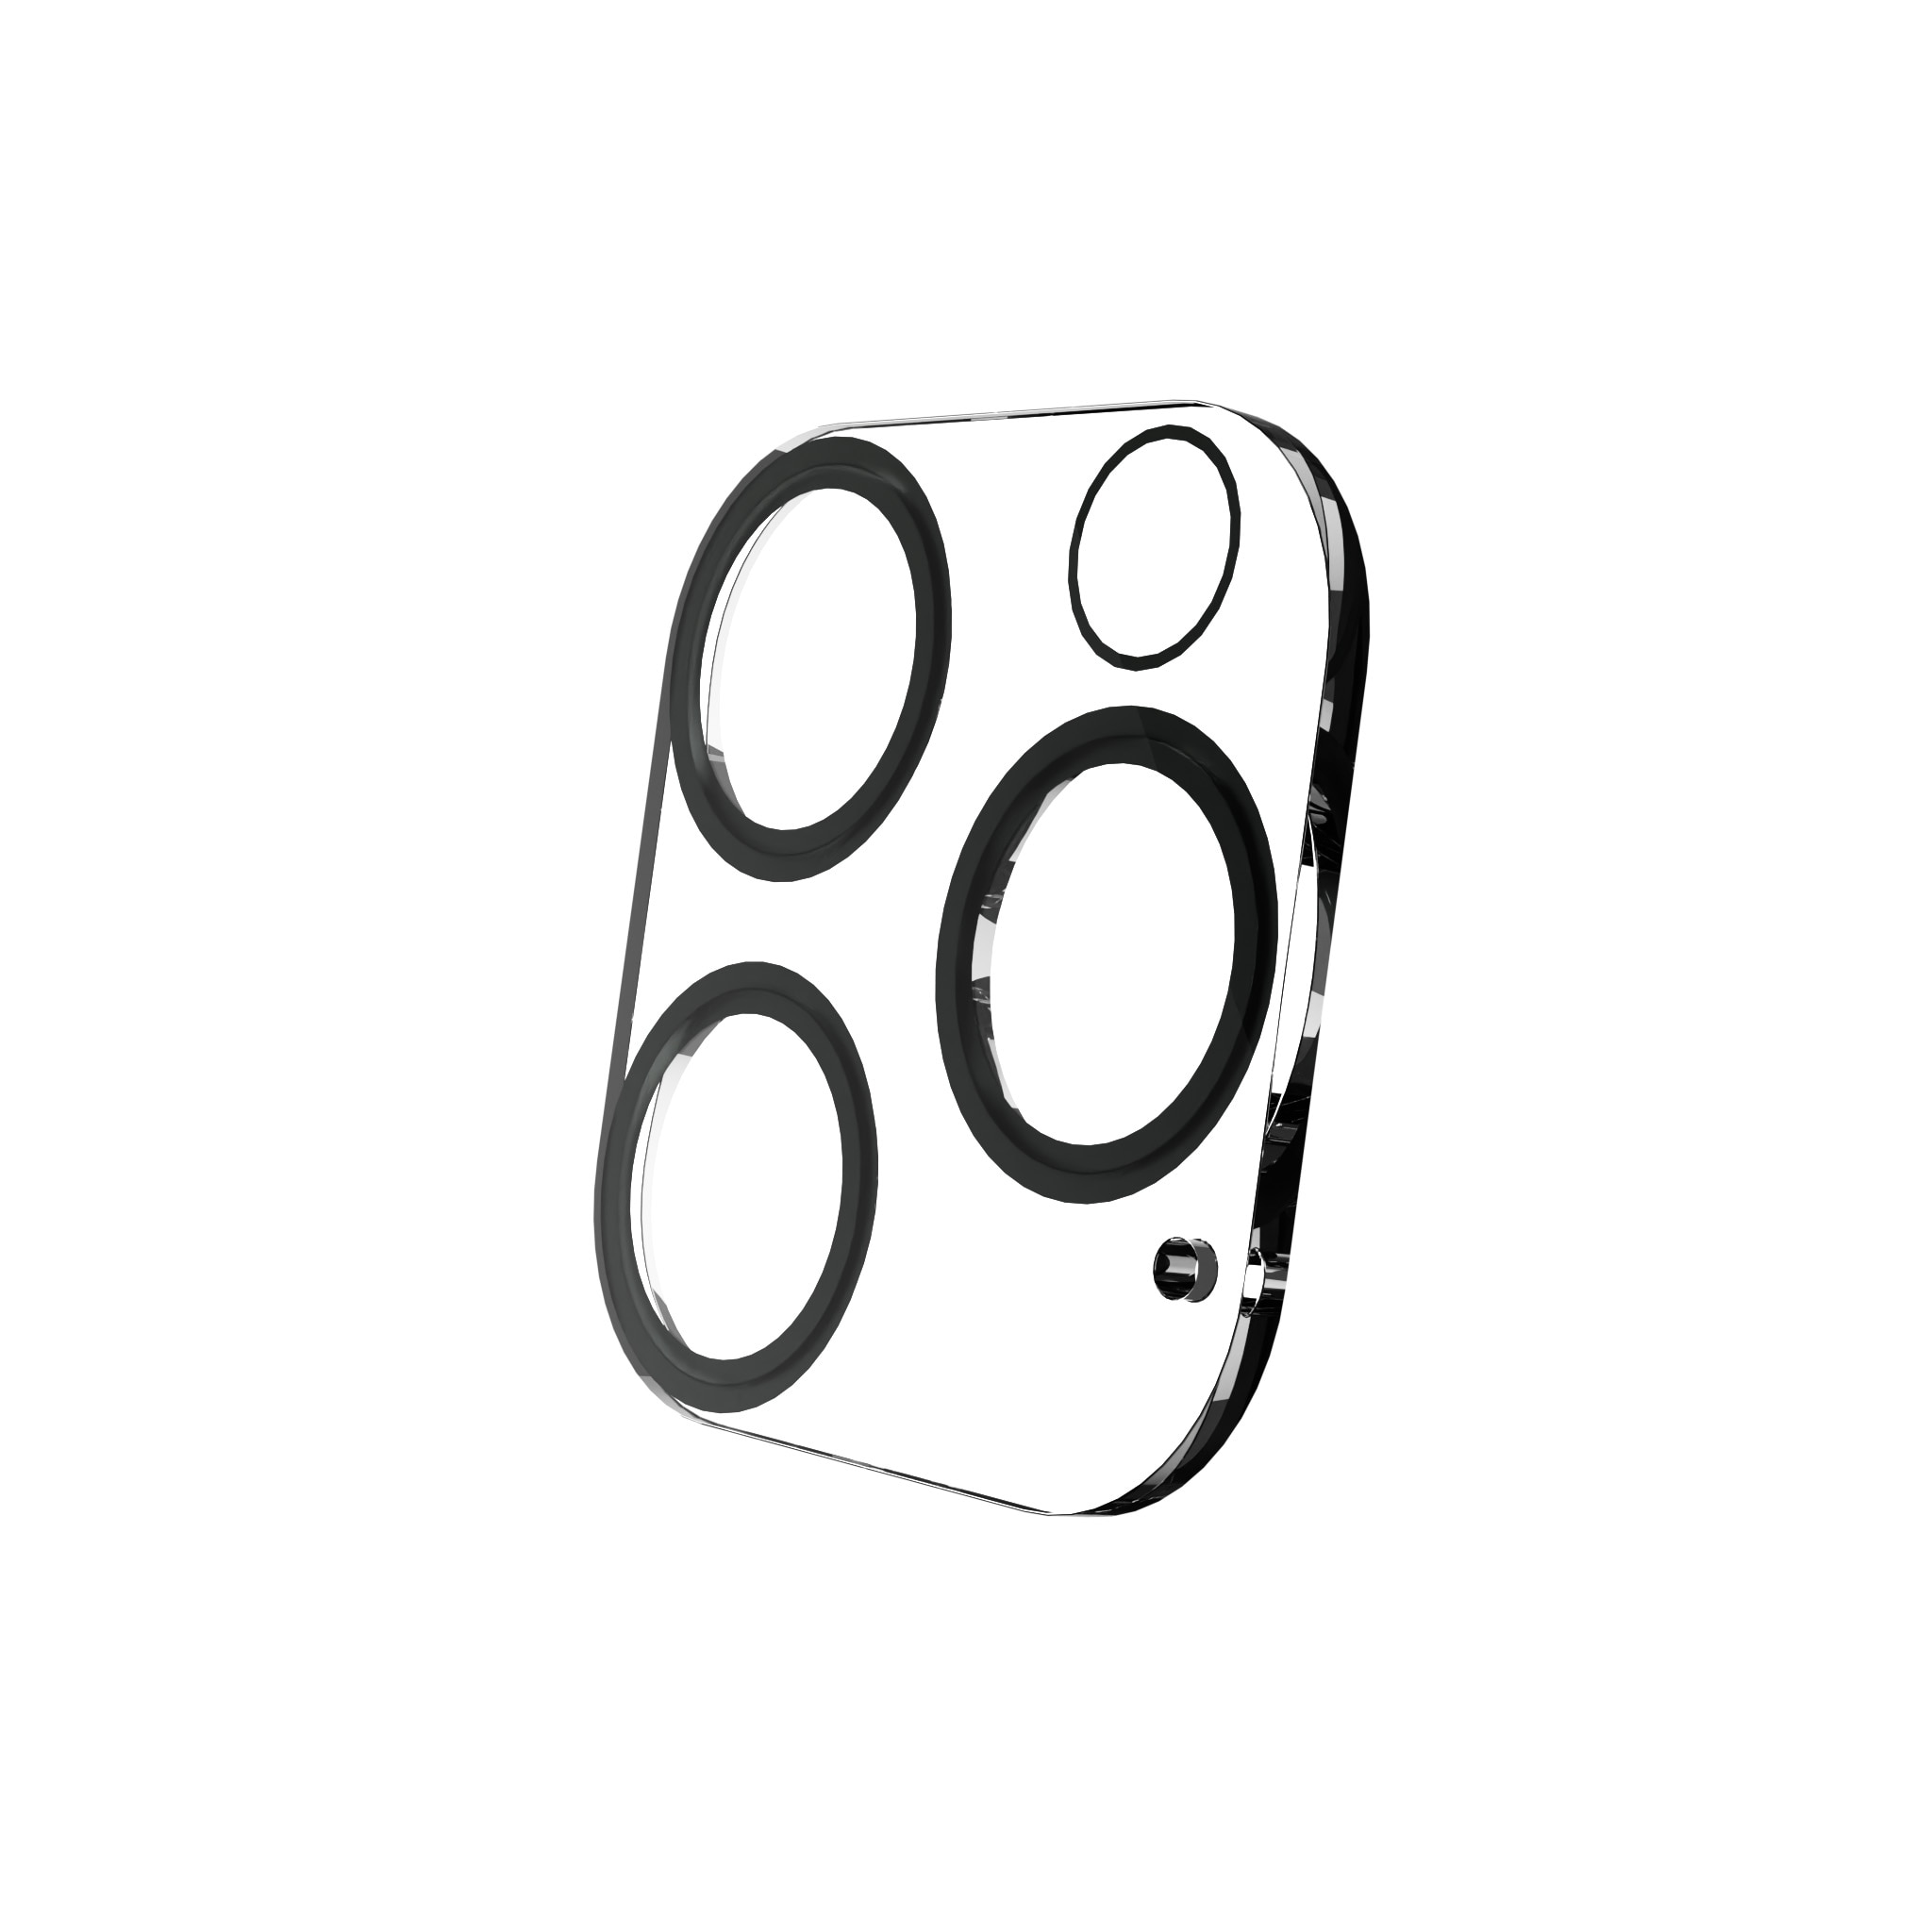 Protecteur de lentille Exoglass iPhone 13 Pro